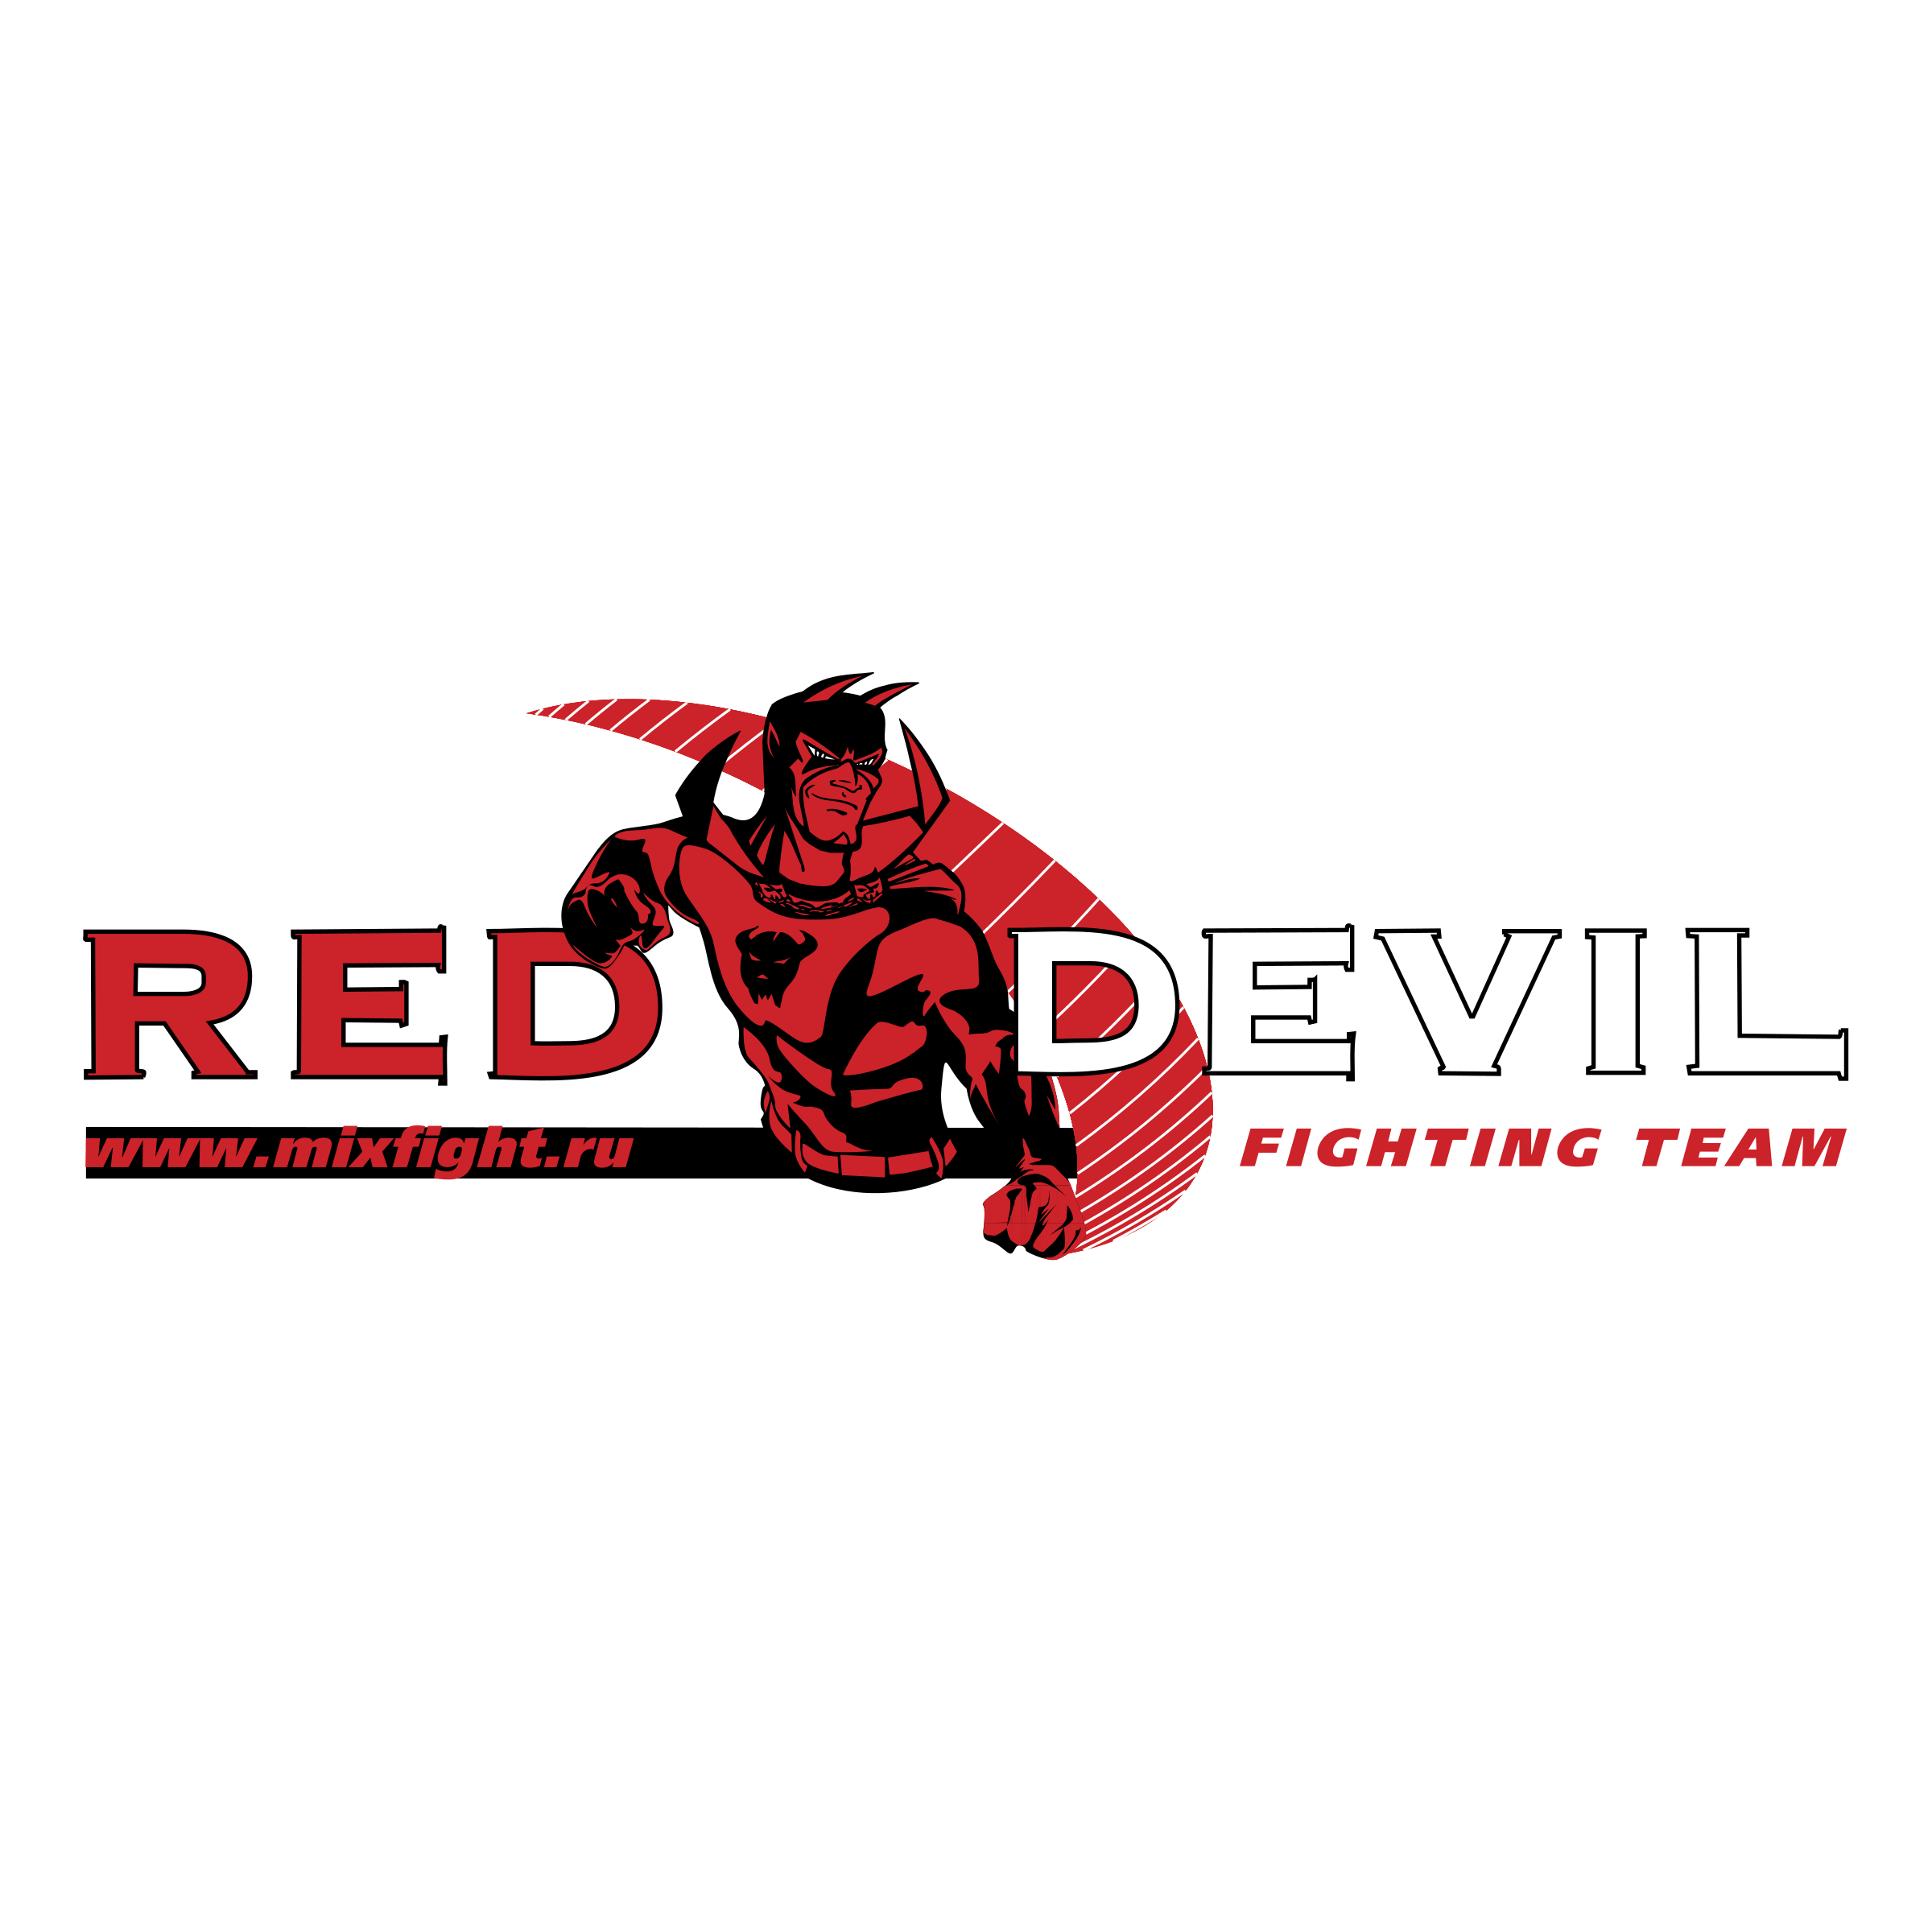 Red Devil Logo - Red Devil Logo PNG Transparent & SVG Vector - Freebie Supply